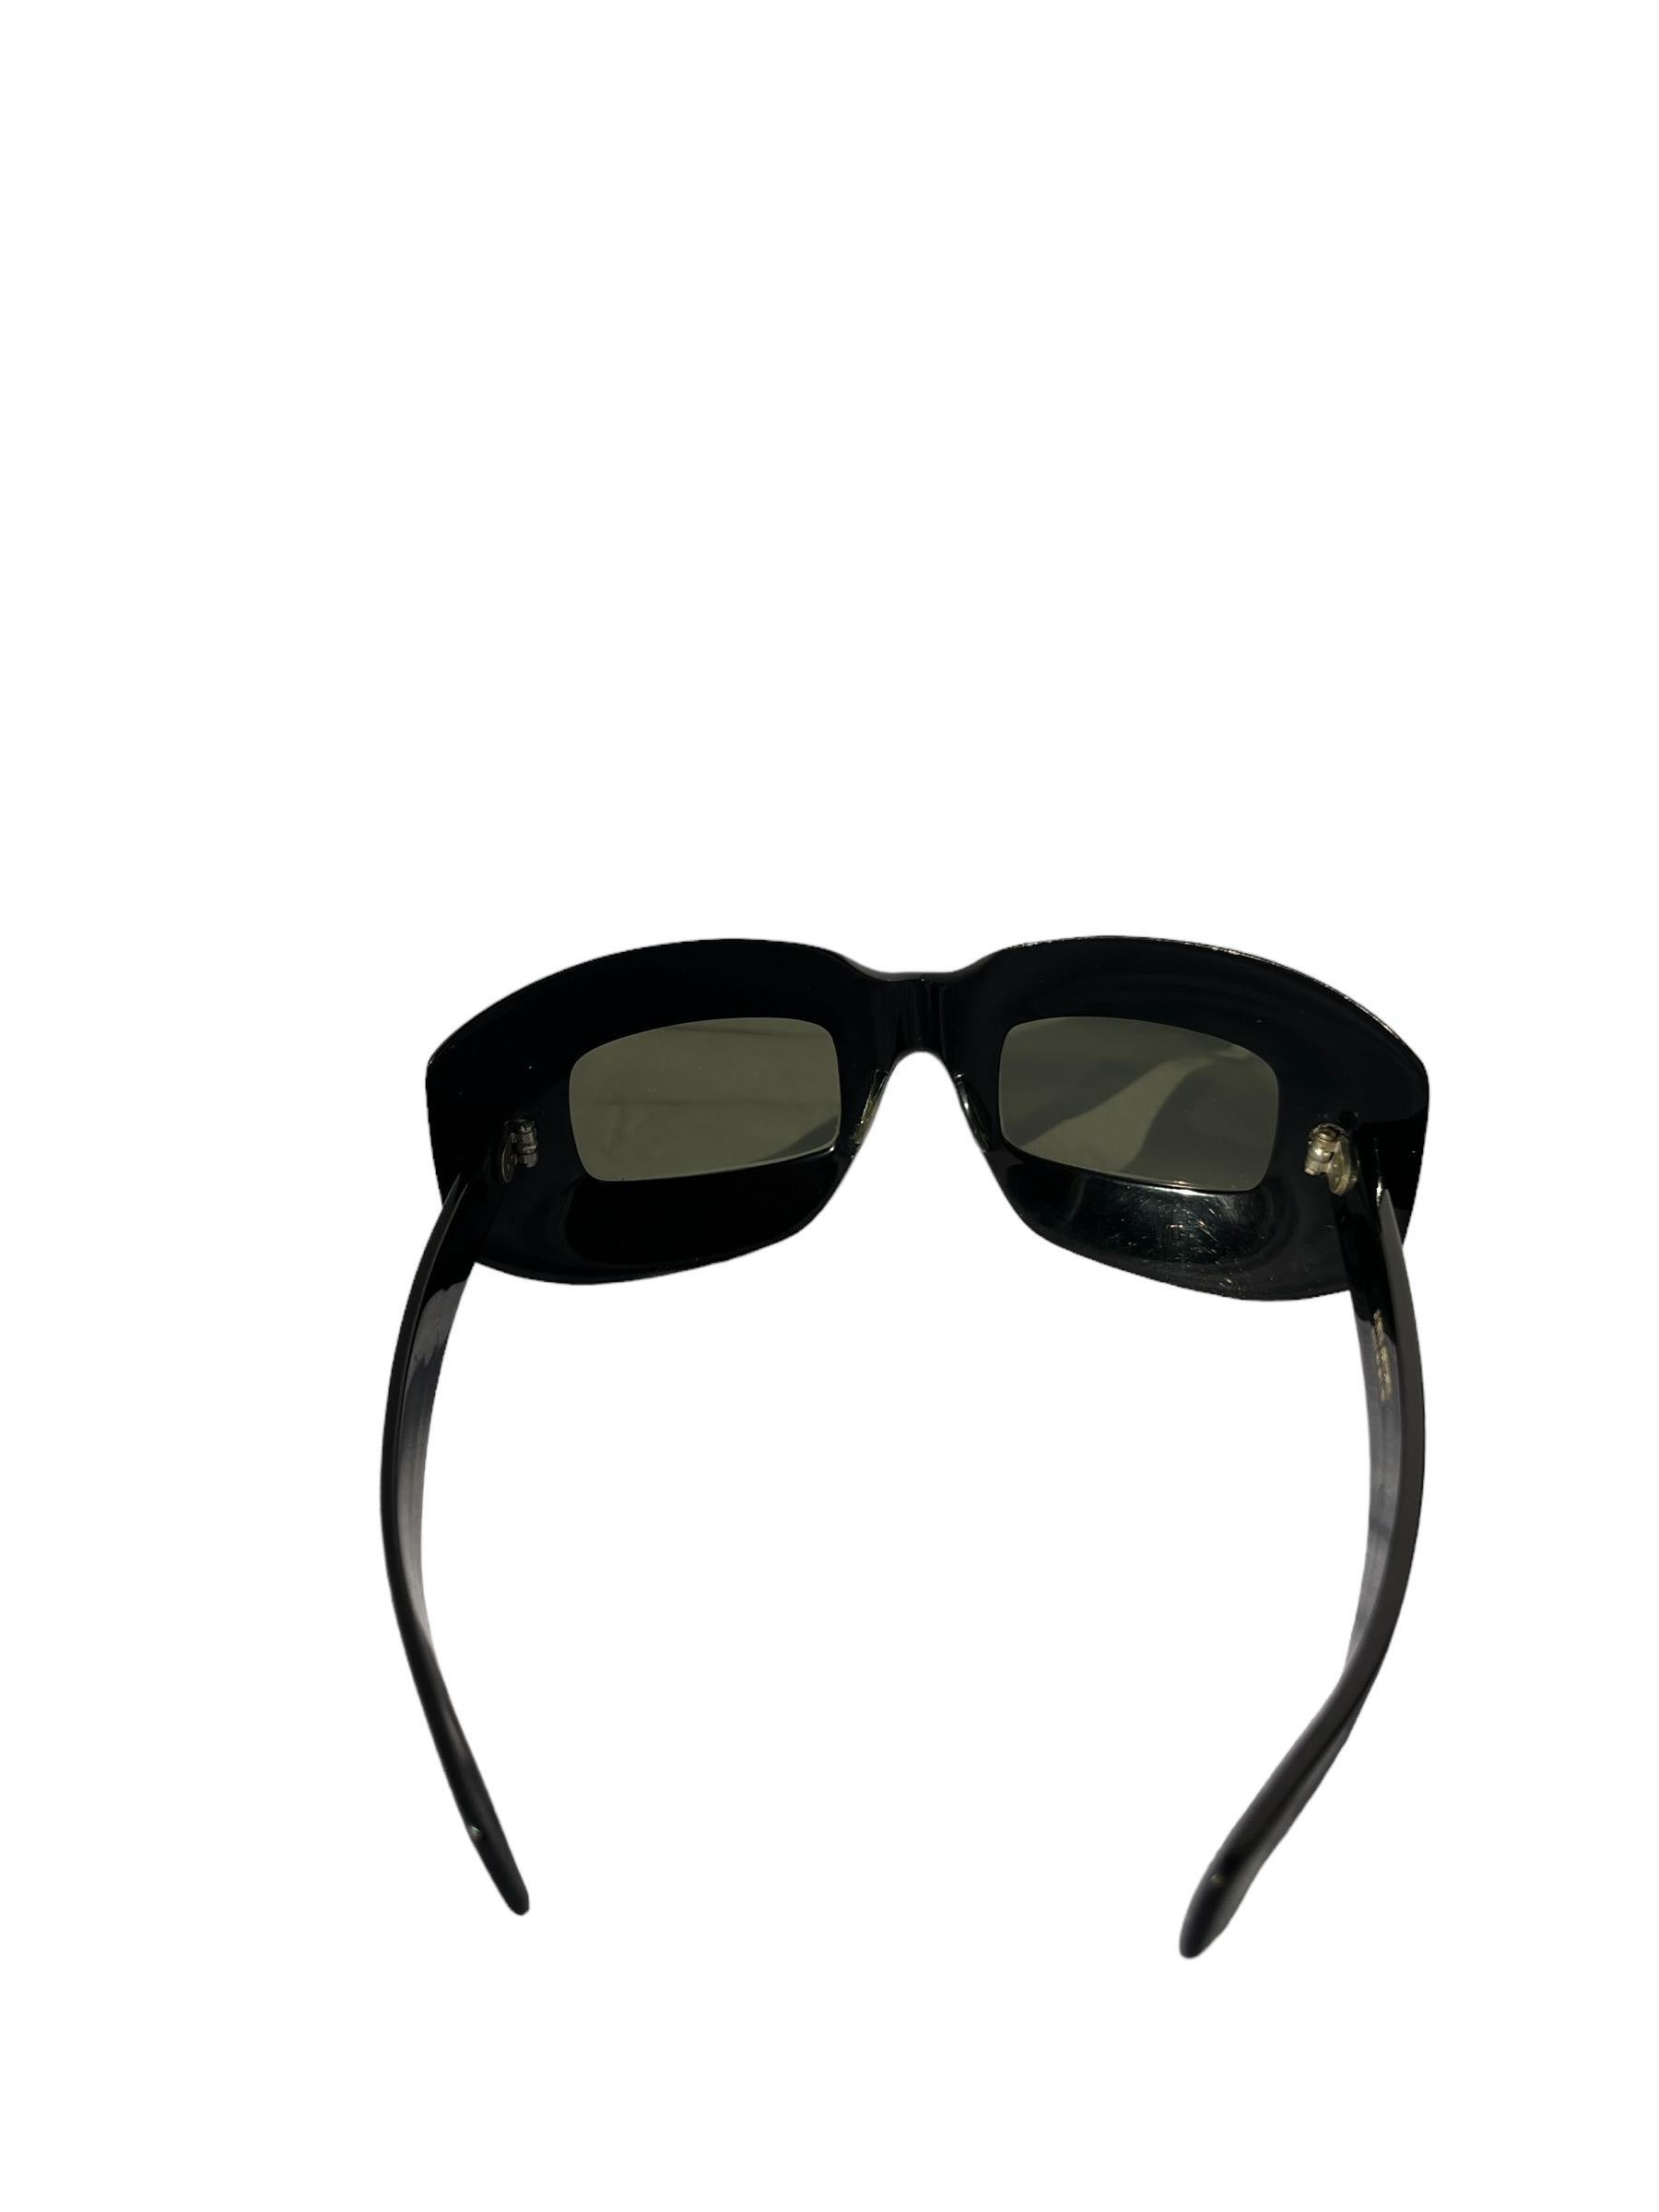 Women's or Men's Vintage 1960s Oliver Goldsmith Mod Black Sunglasses  For Sale